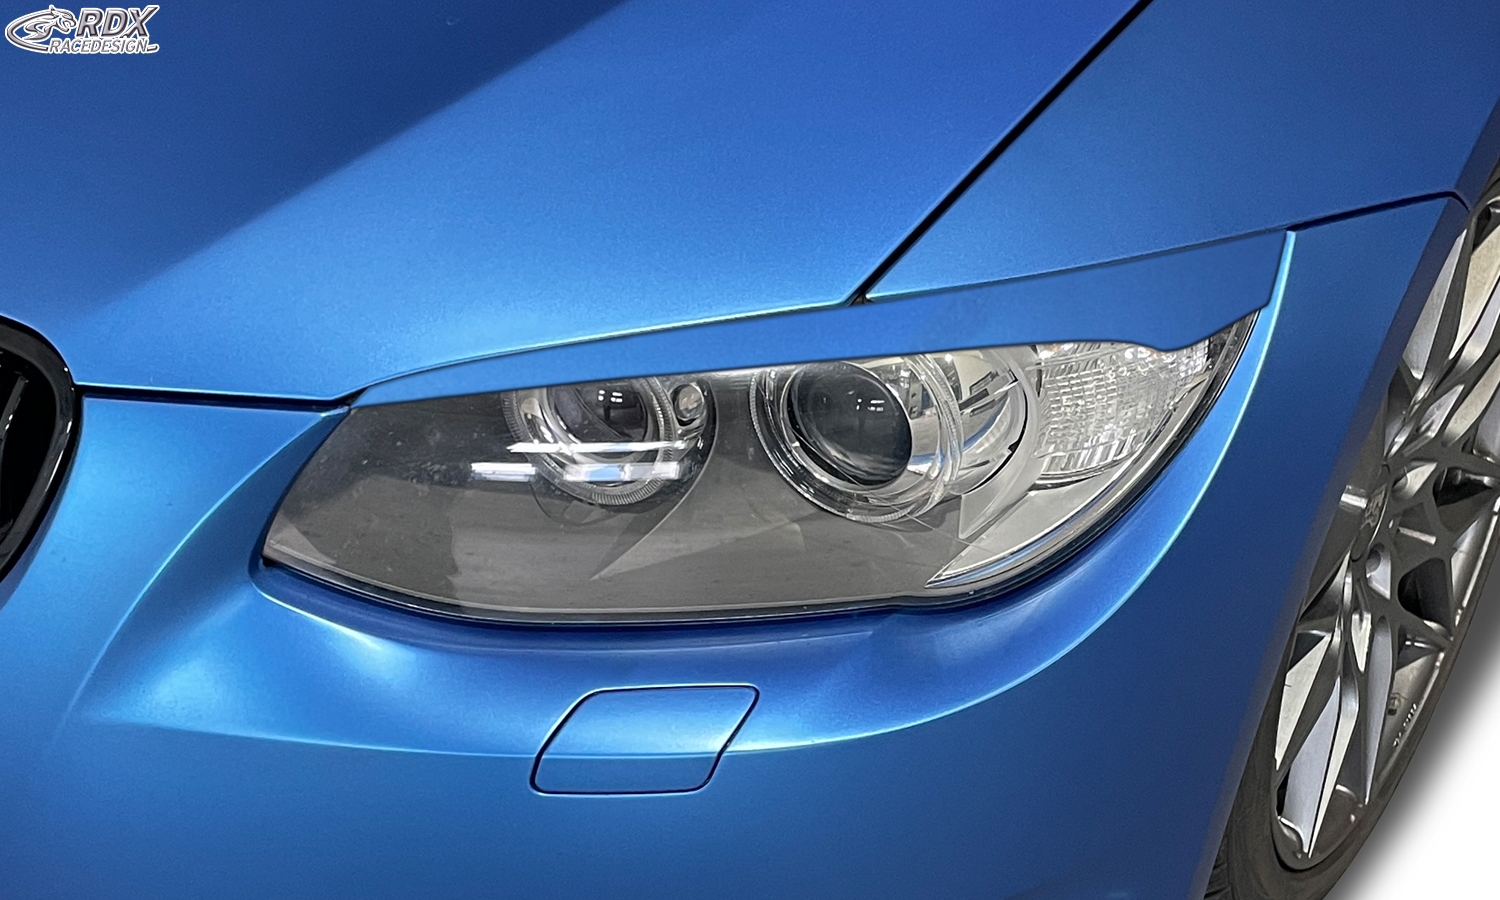 RDX Headlight covers for BMW 3-series E92 / E93 2010-2013 Light Brows